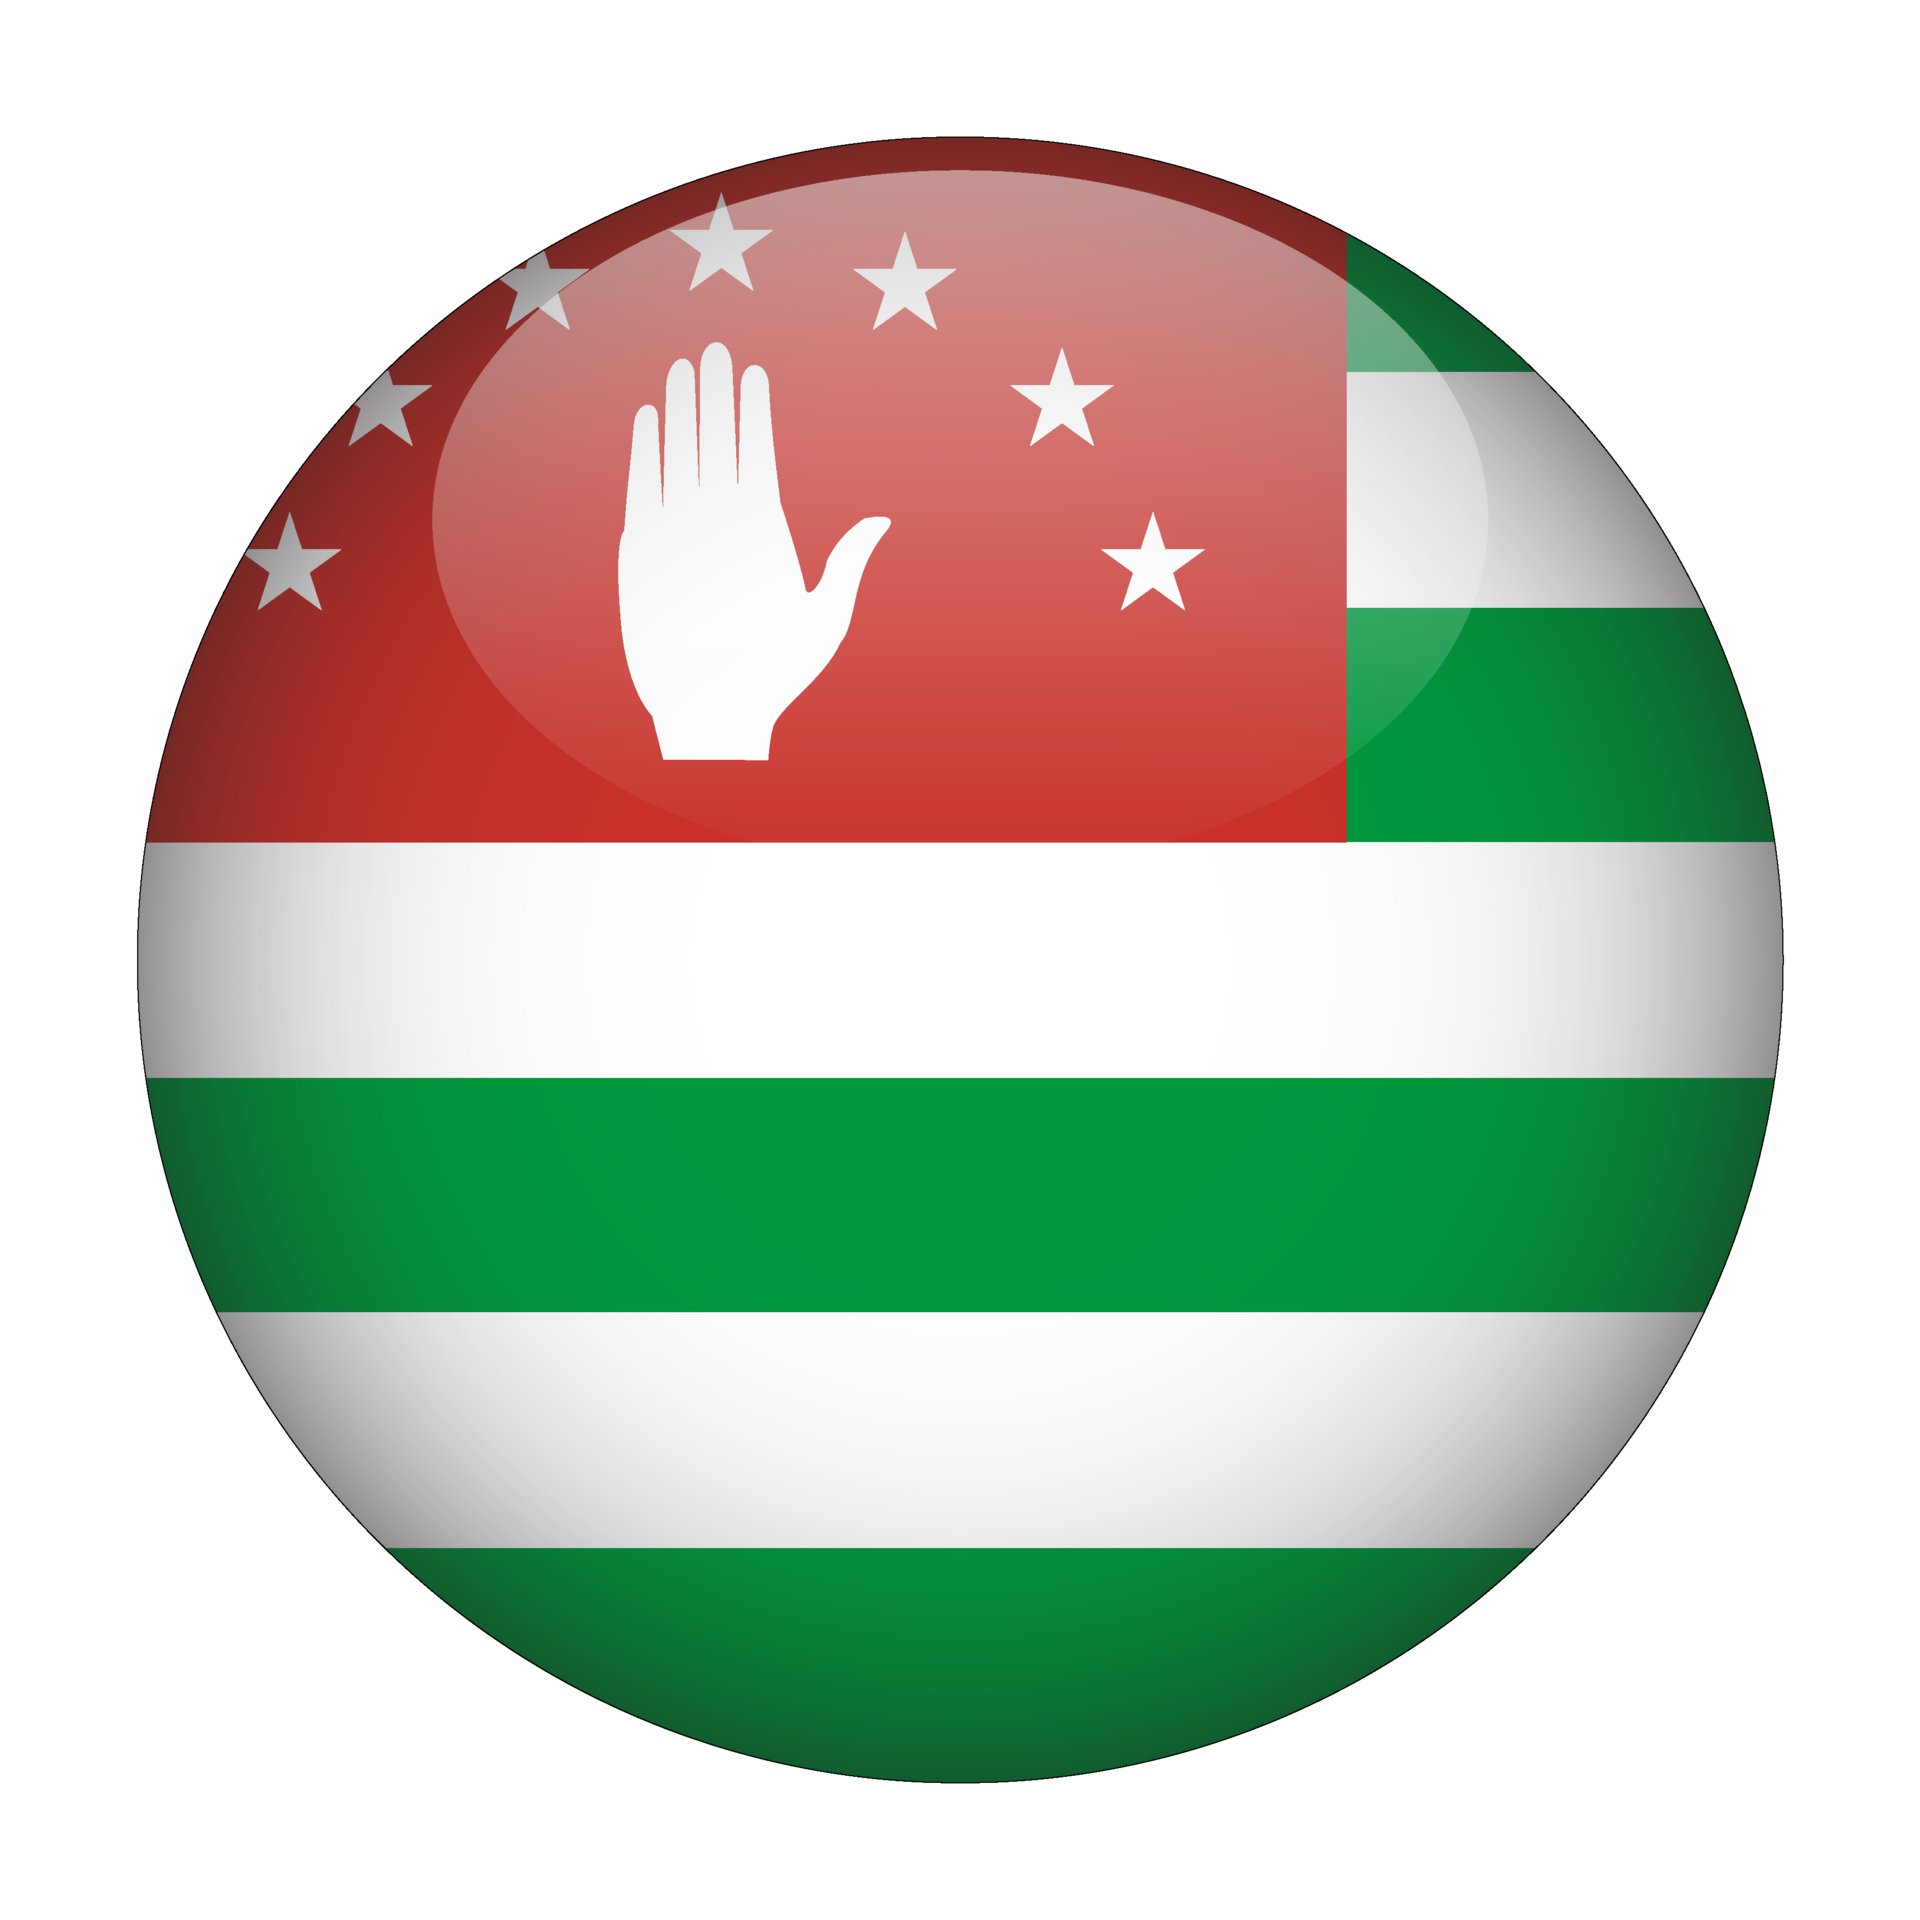 Cờ Abkhazia là một trong những biểu tượng đặc trưng của quốc gia này. Nếu bạn muốn tìm hiểu về đất nước này, hãy xem hình ảnh về cờ Abkhazia - một cờ với sắc đỏ, xanh lục và trắng.